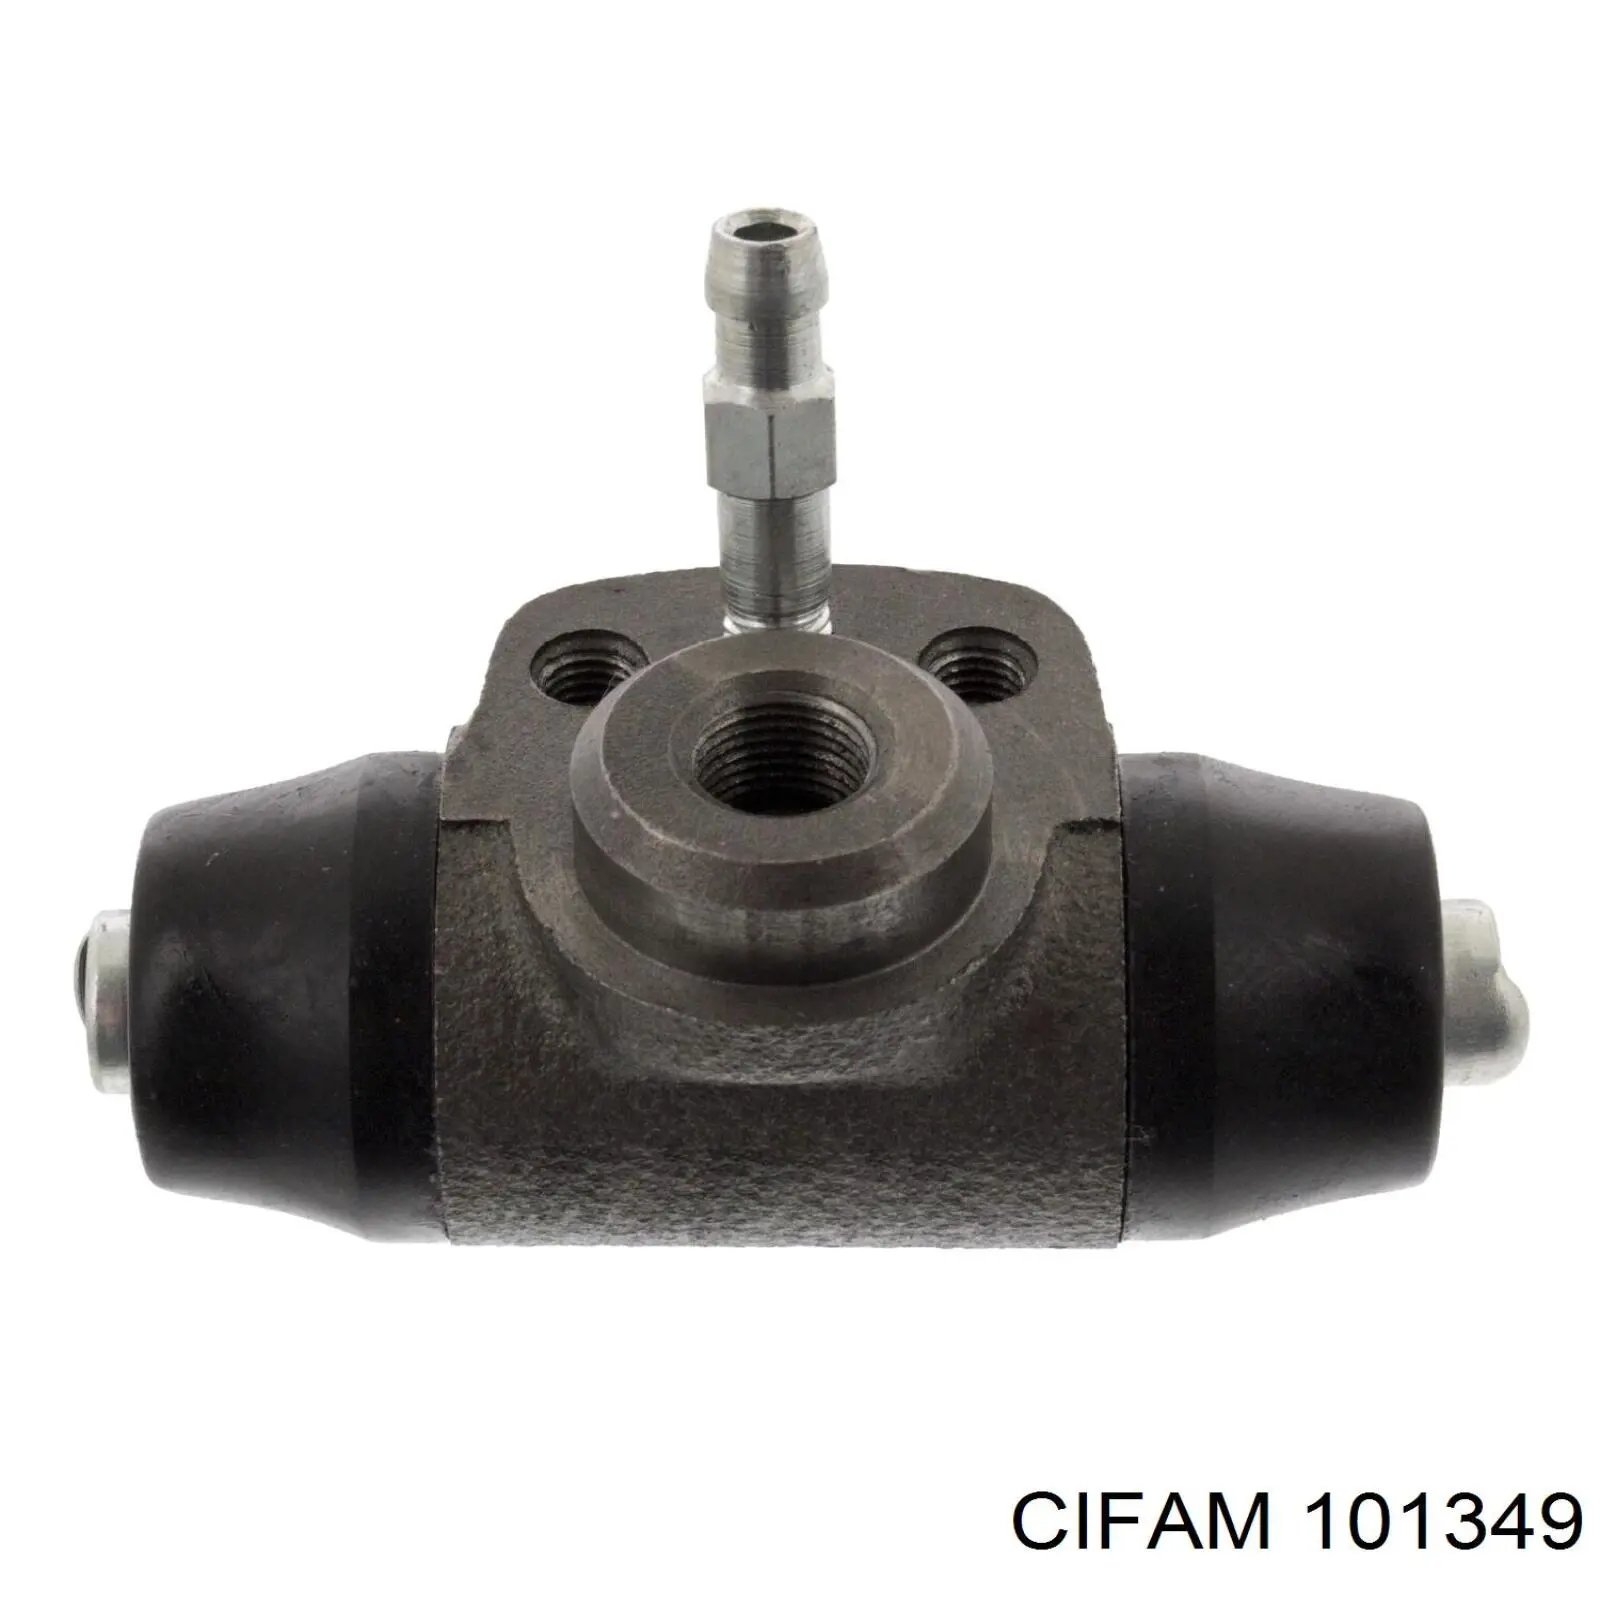 101349 Cifam cilindro de freno de rueda trasero